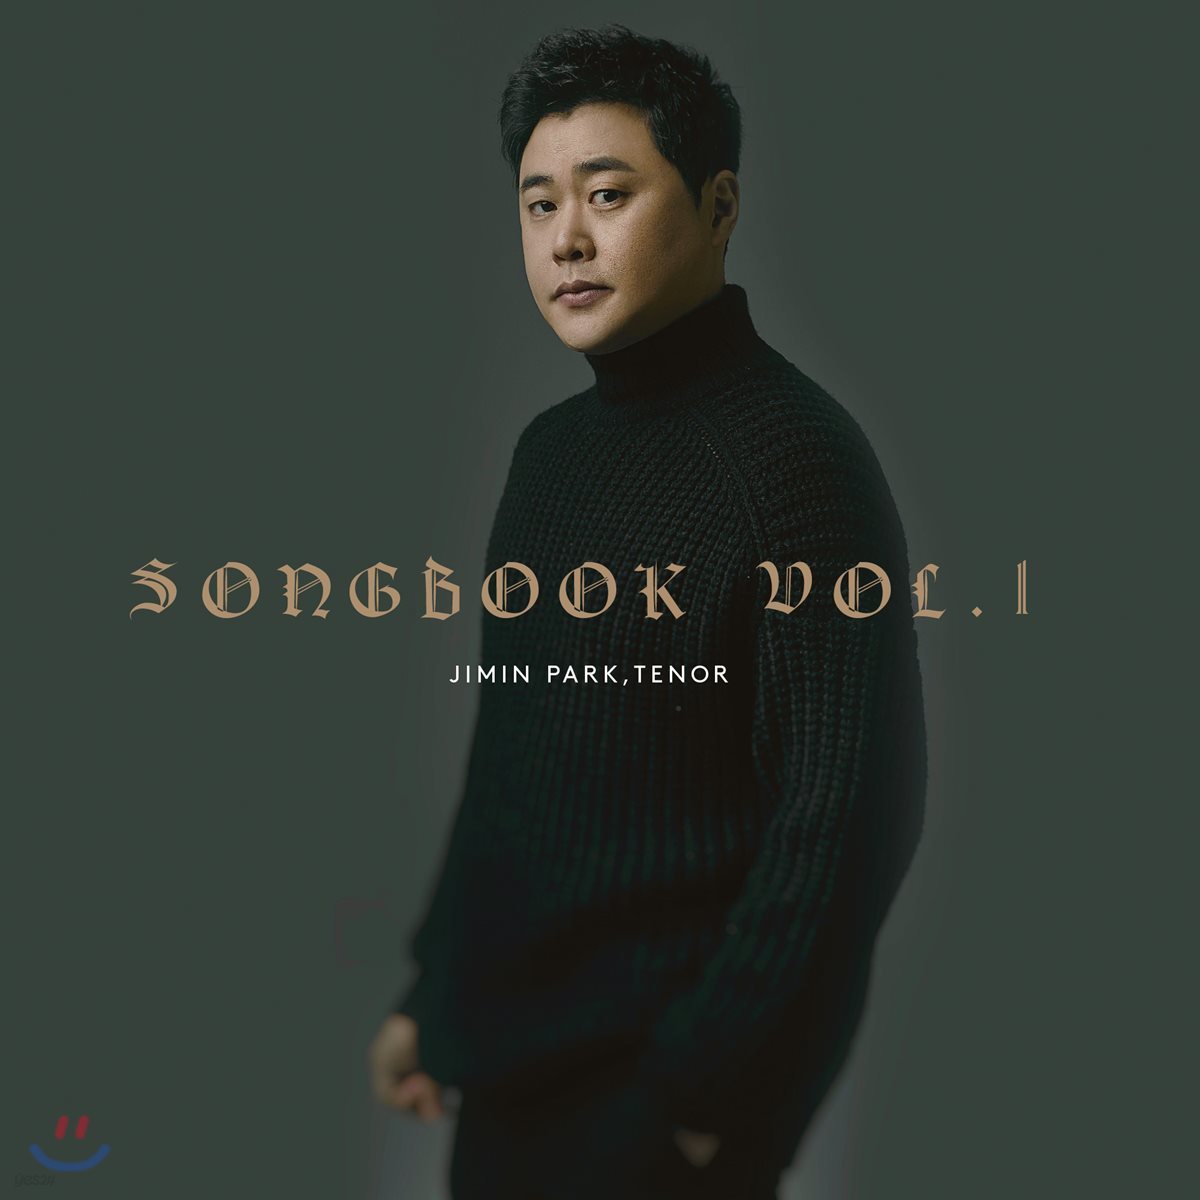 테너 박지민 - Songbook Vol. 1